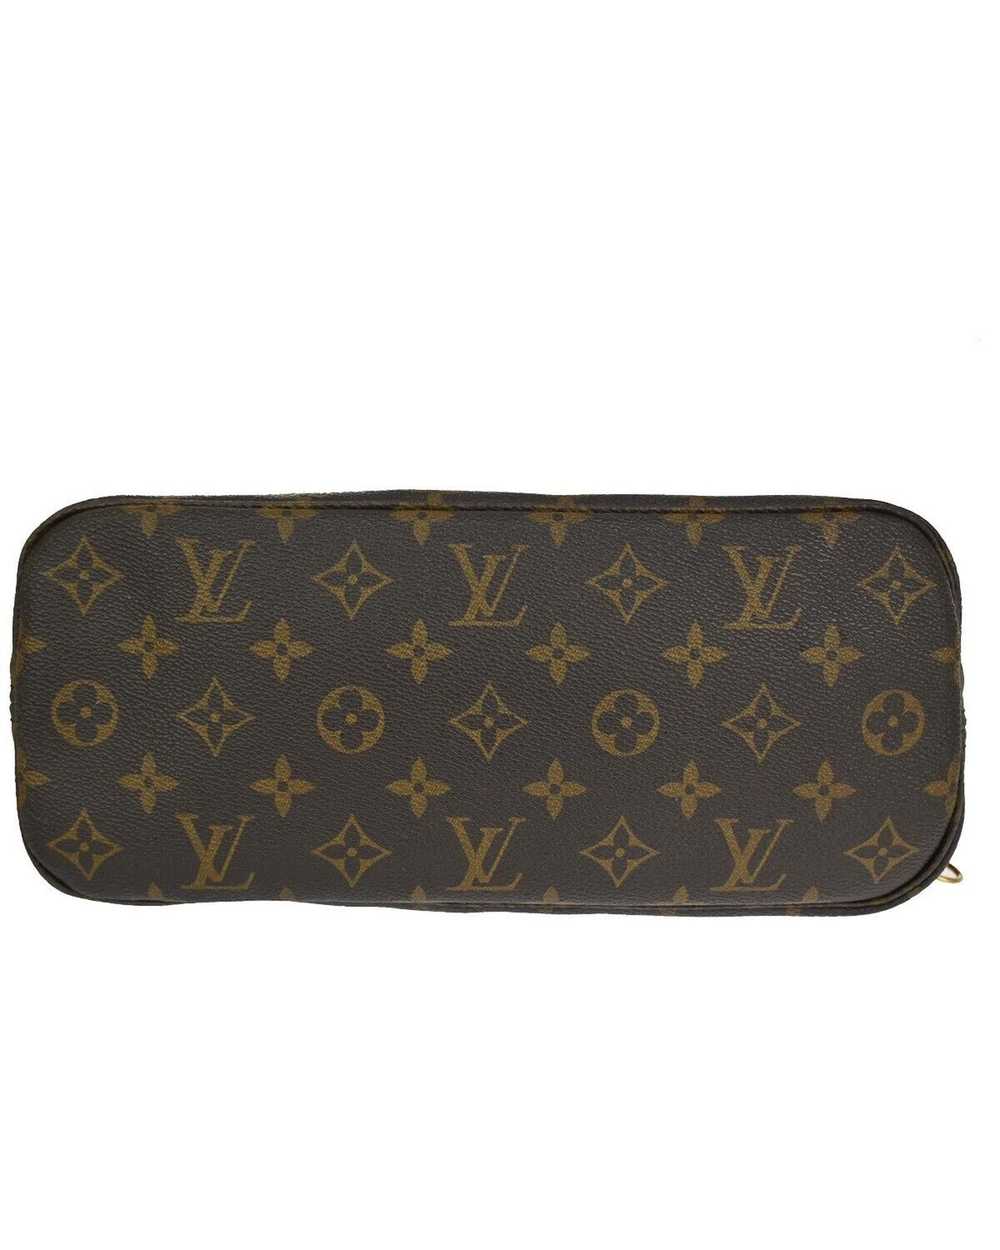 Louis Vuitton Iconic Monogram Leather Shoulder Bag - image 6